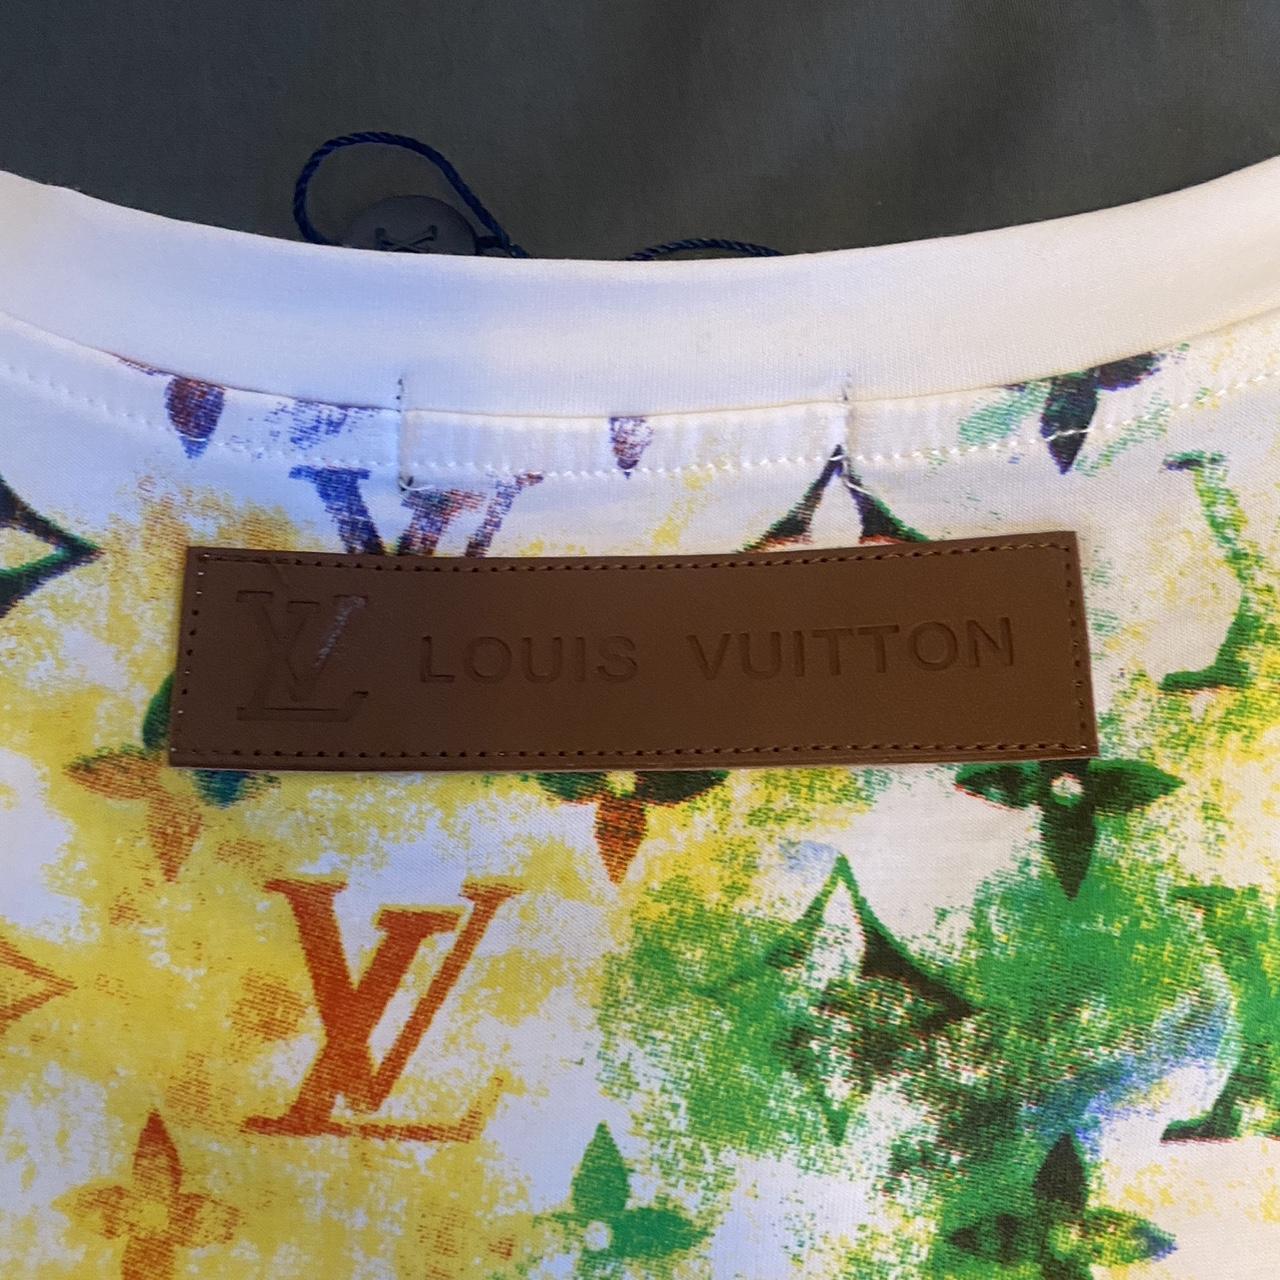 Louis Vuitton Men's Multicolor T-Shirt Size: - Depop